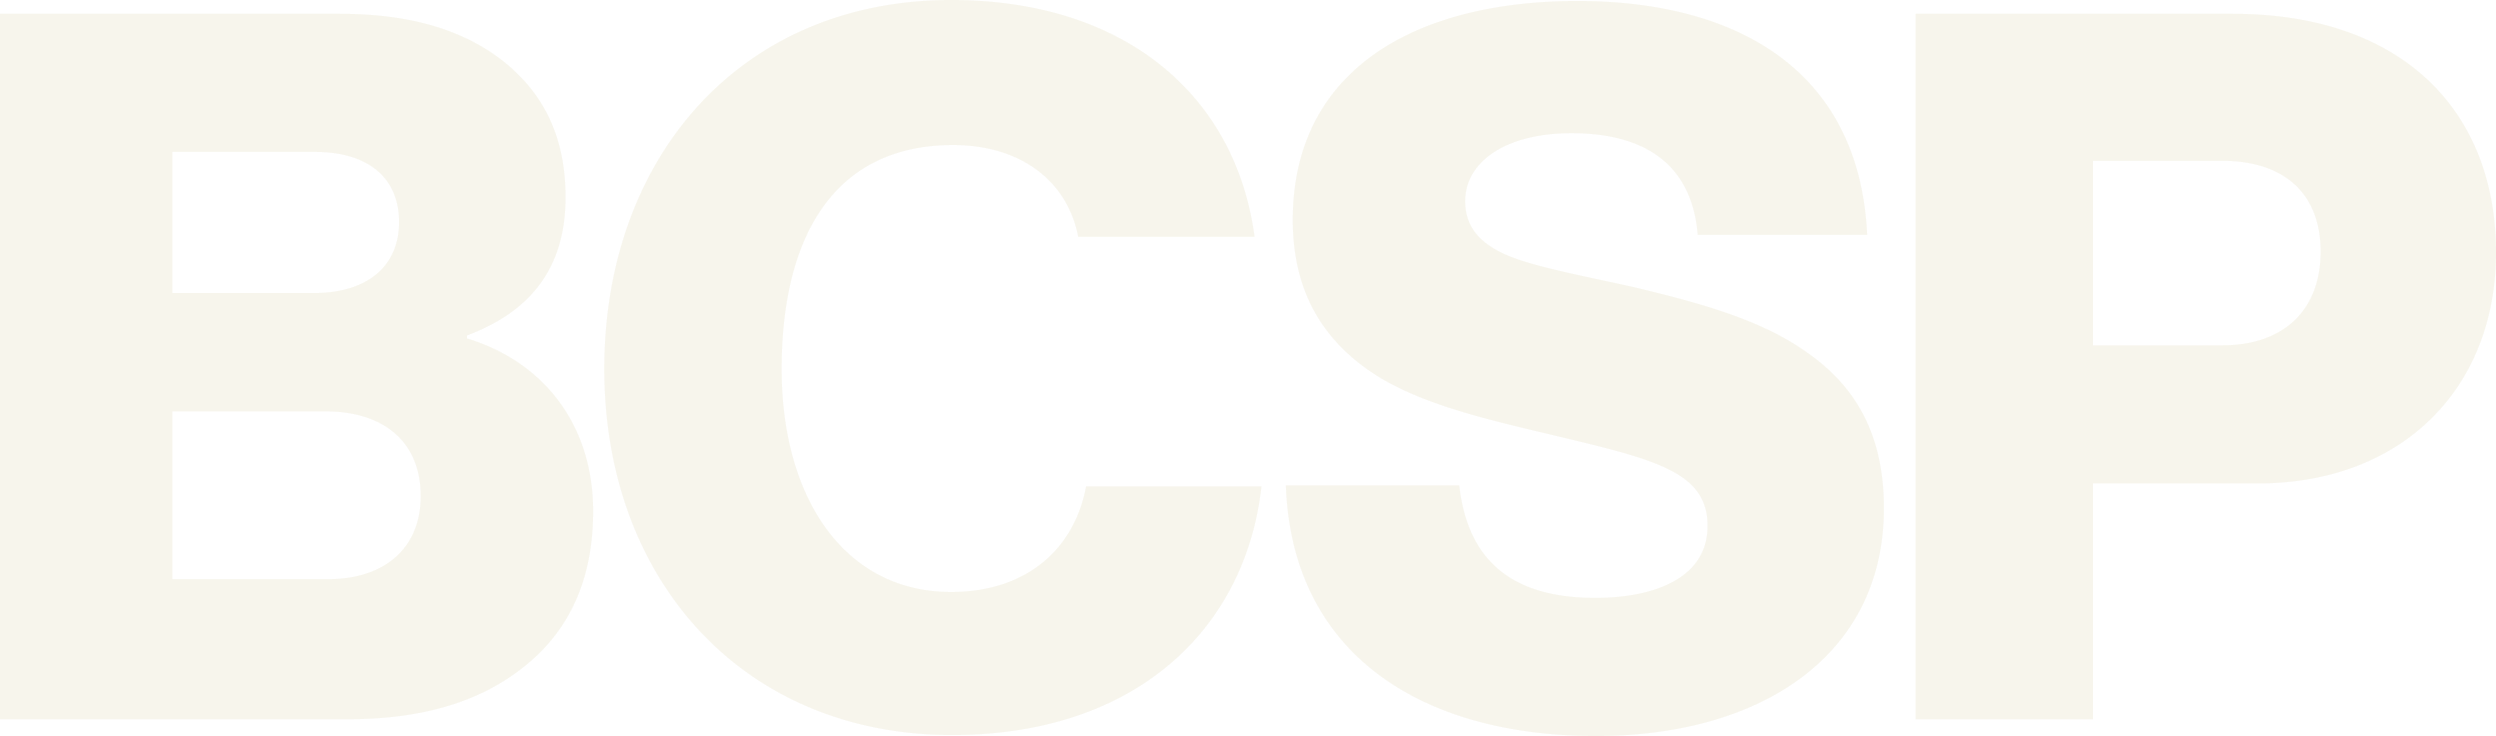 BCSP logo